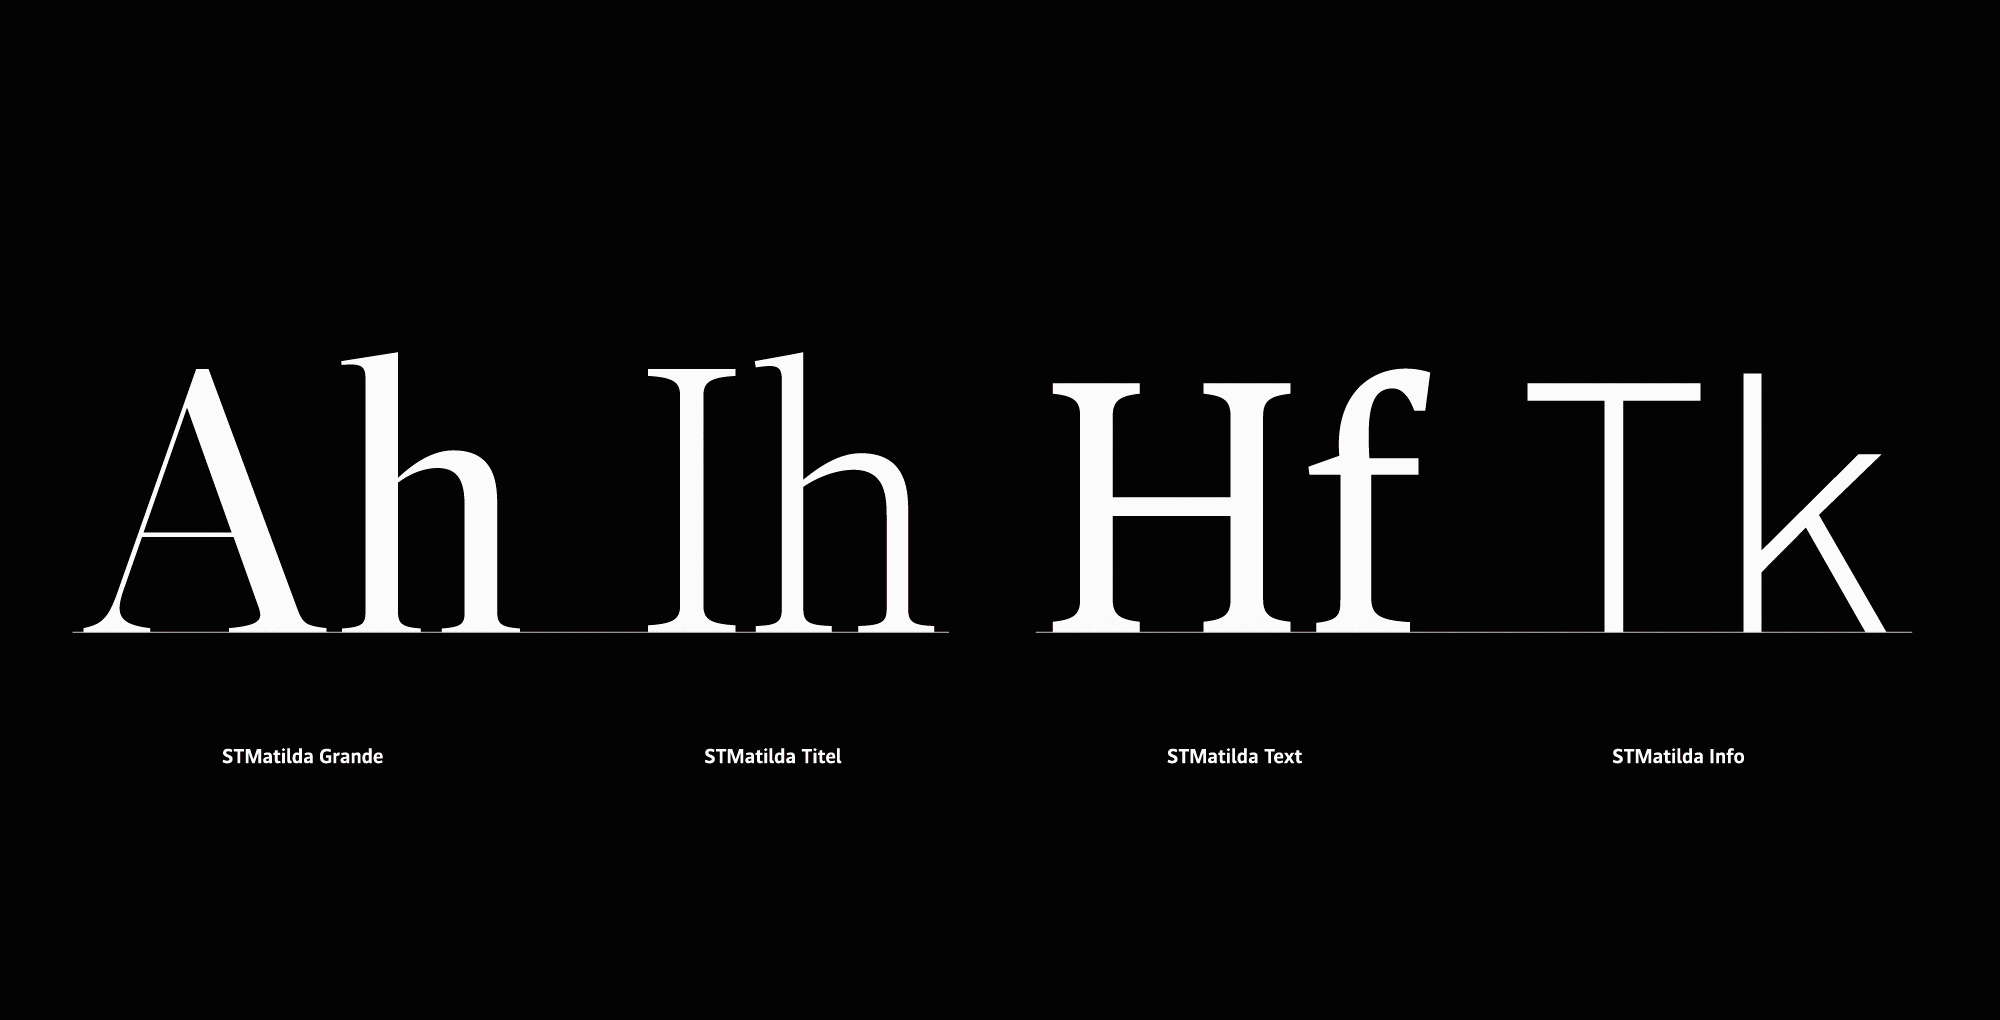 Custom Fonts for Der Standard